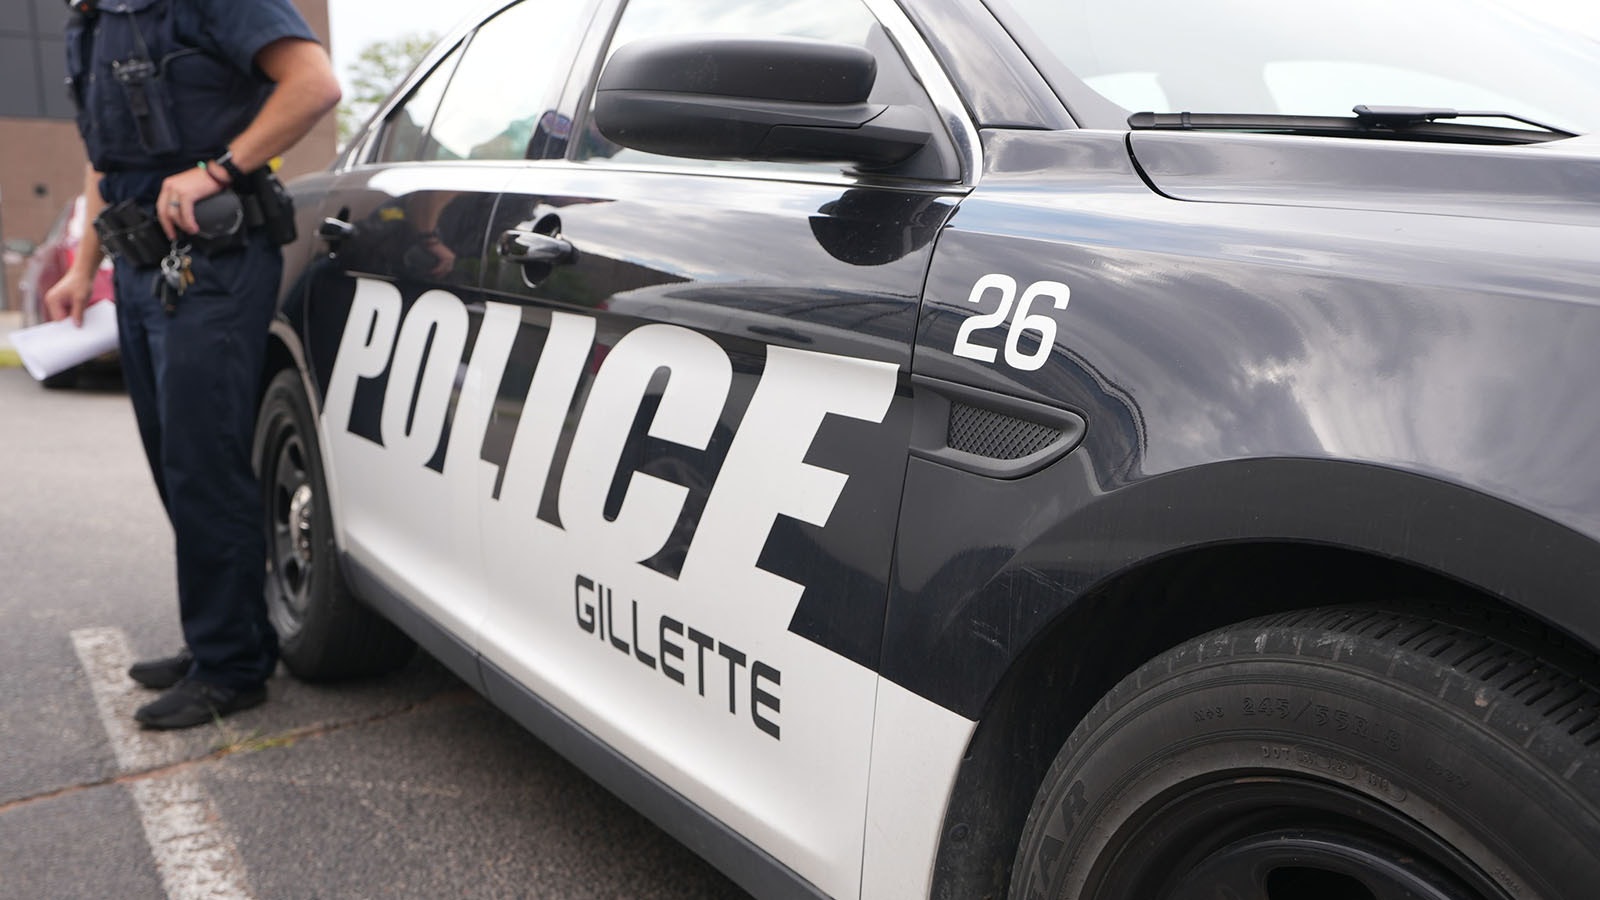 Gillette police 5 31 23